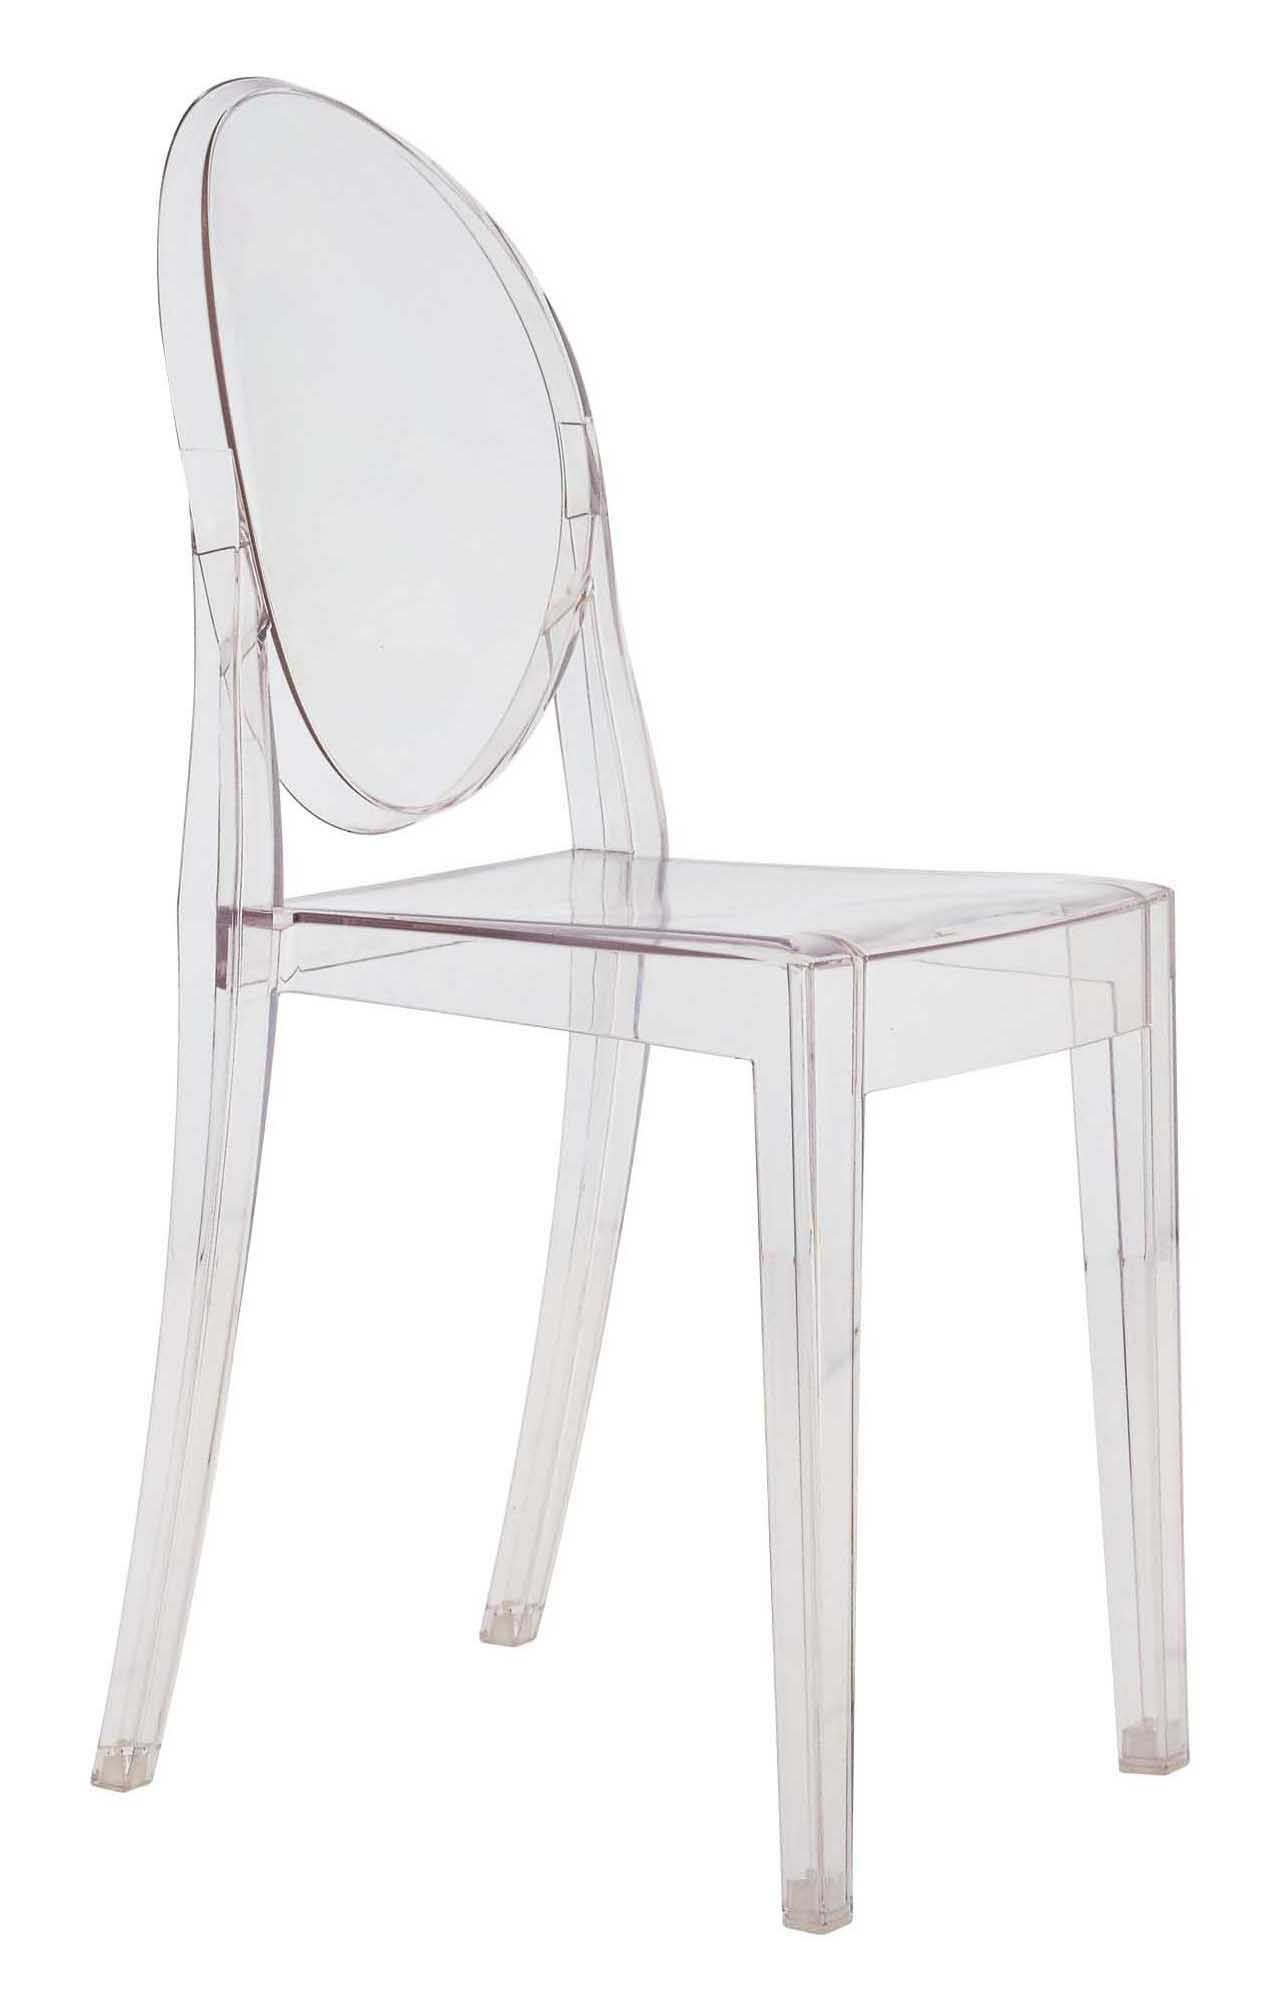 Victoria Ghost Stackable Chair Desain Transparan Philippe Starck Untuk Kartell Pemilihan Produk Sdm